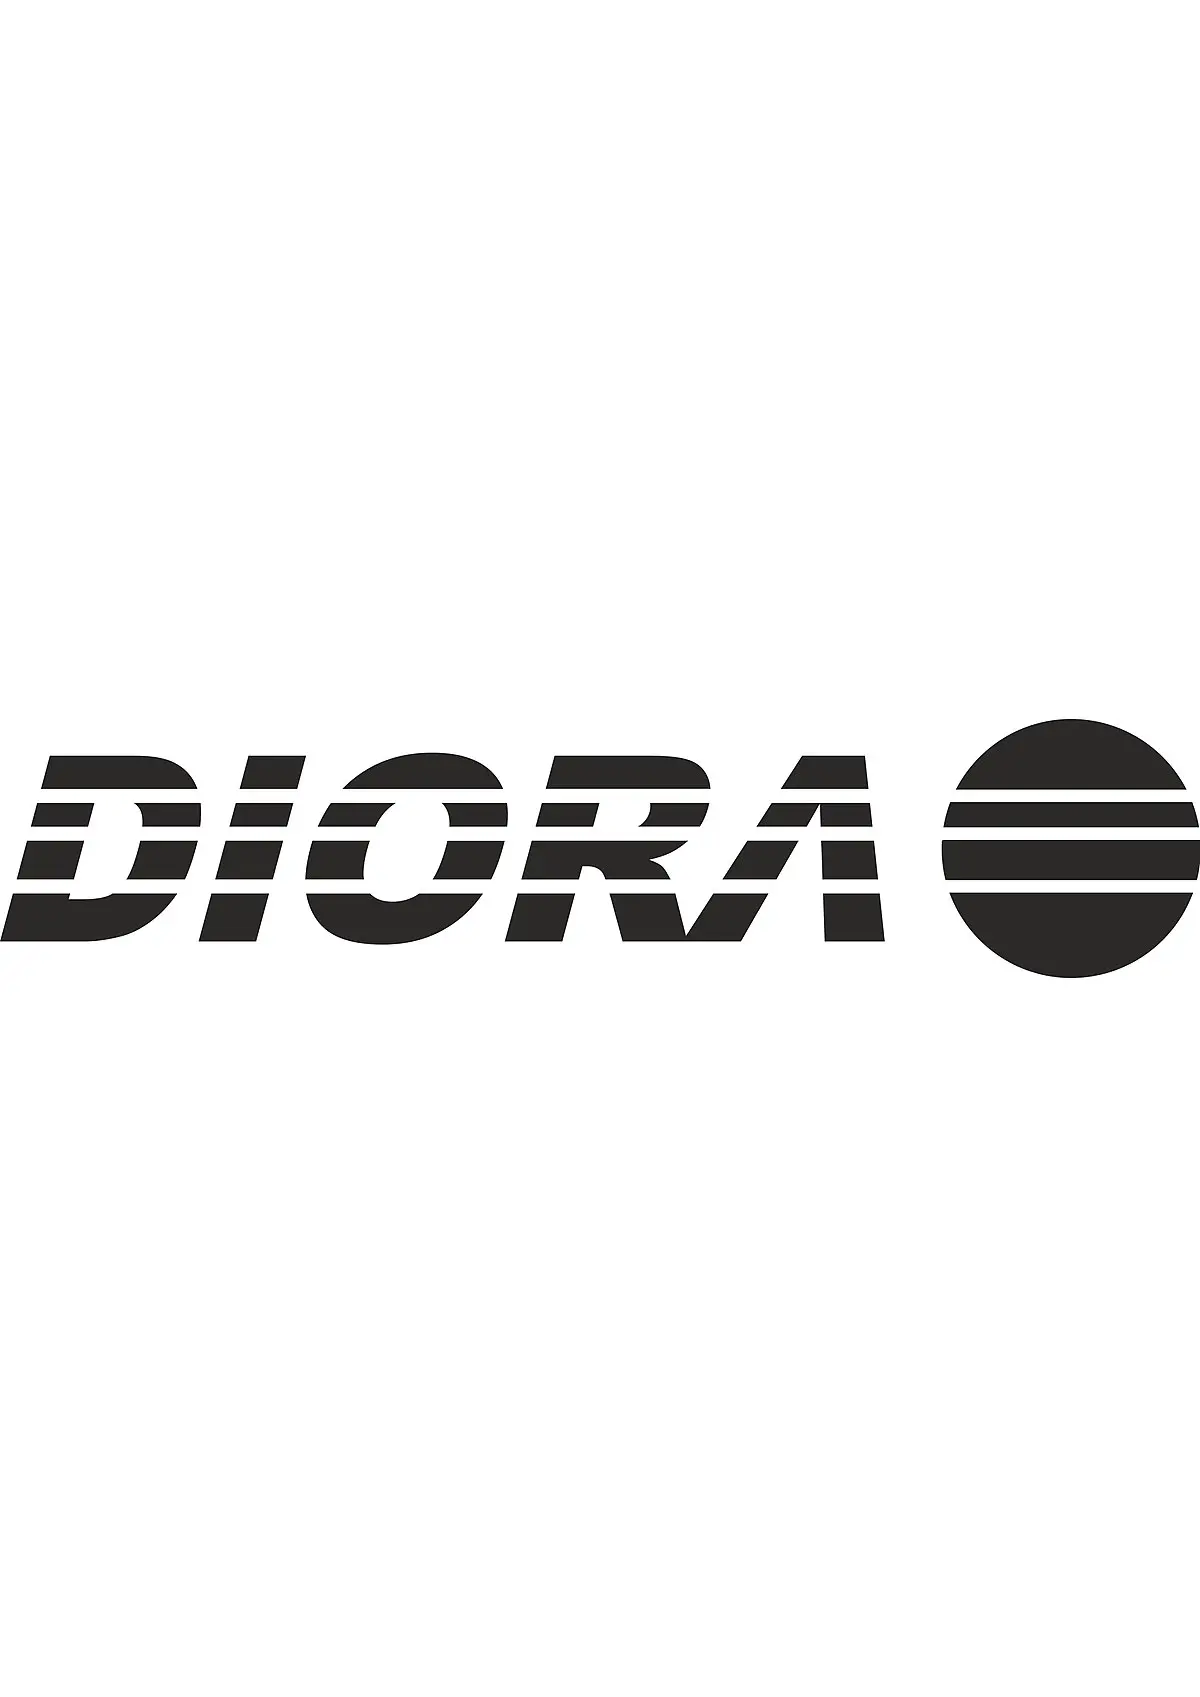 radio z dzierżoniowa - Gdzie były zakłady Diora